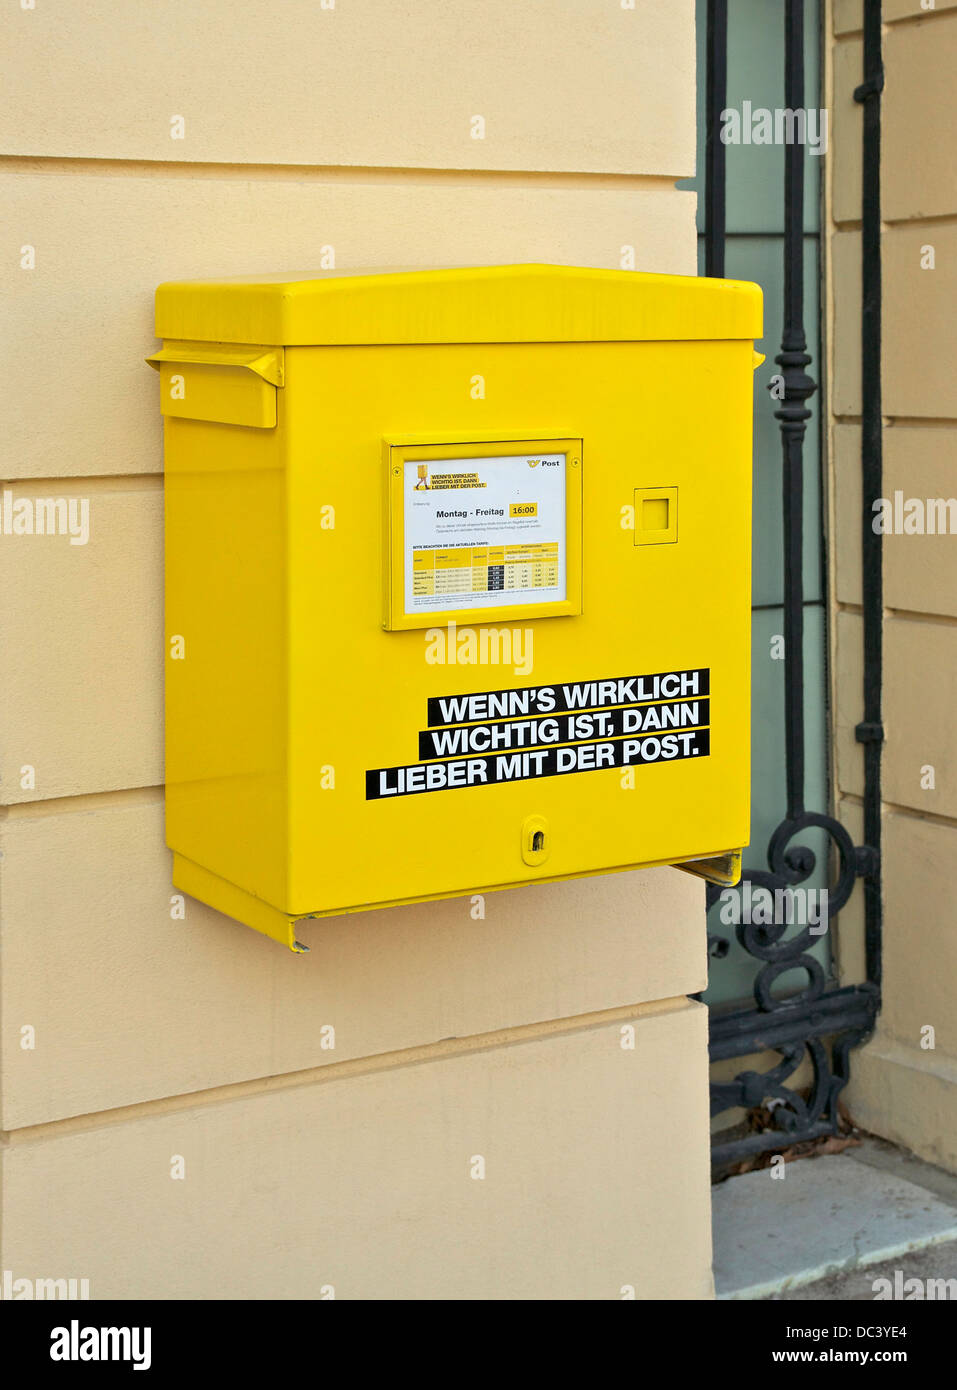 Briefkasten am Eingang des Schloss Schönbrunn, Wien, Österreich  Stockfotografie - Alamy